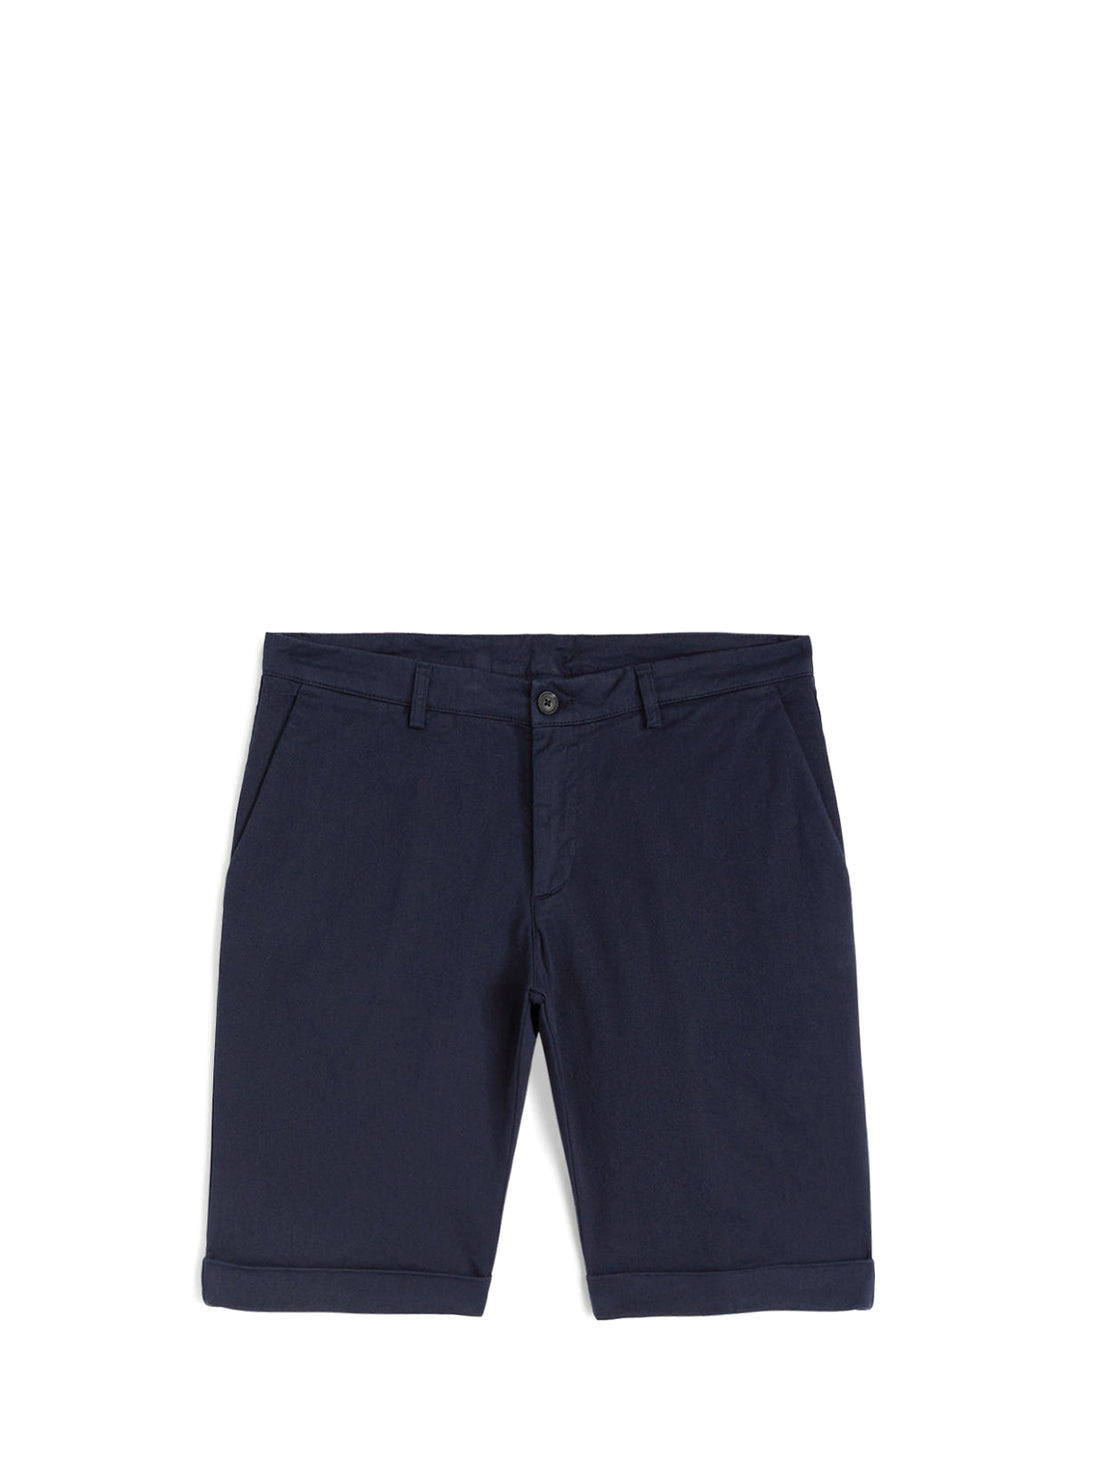 Bermuda Blu Trussardi Jeans